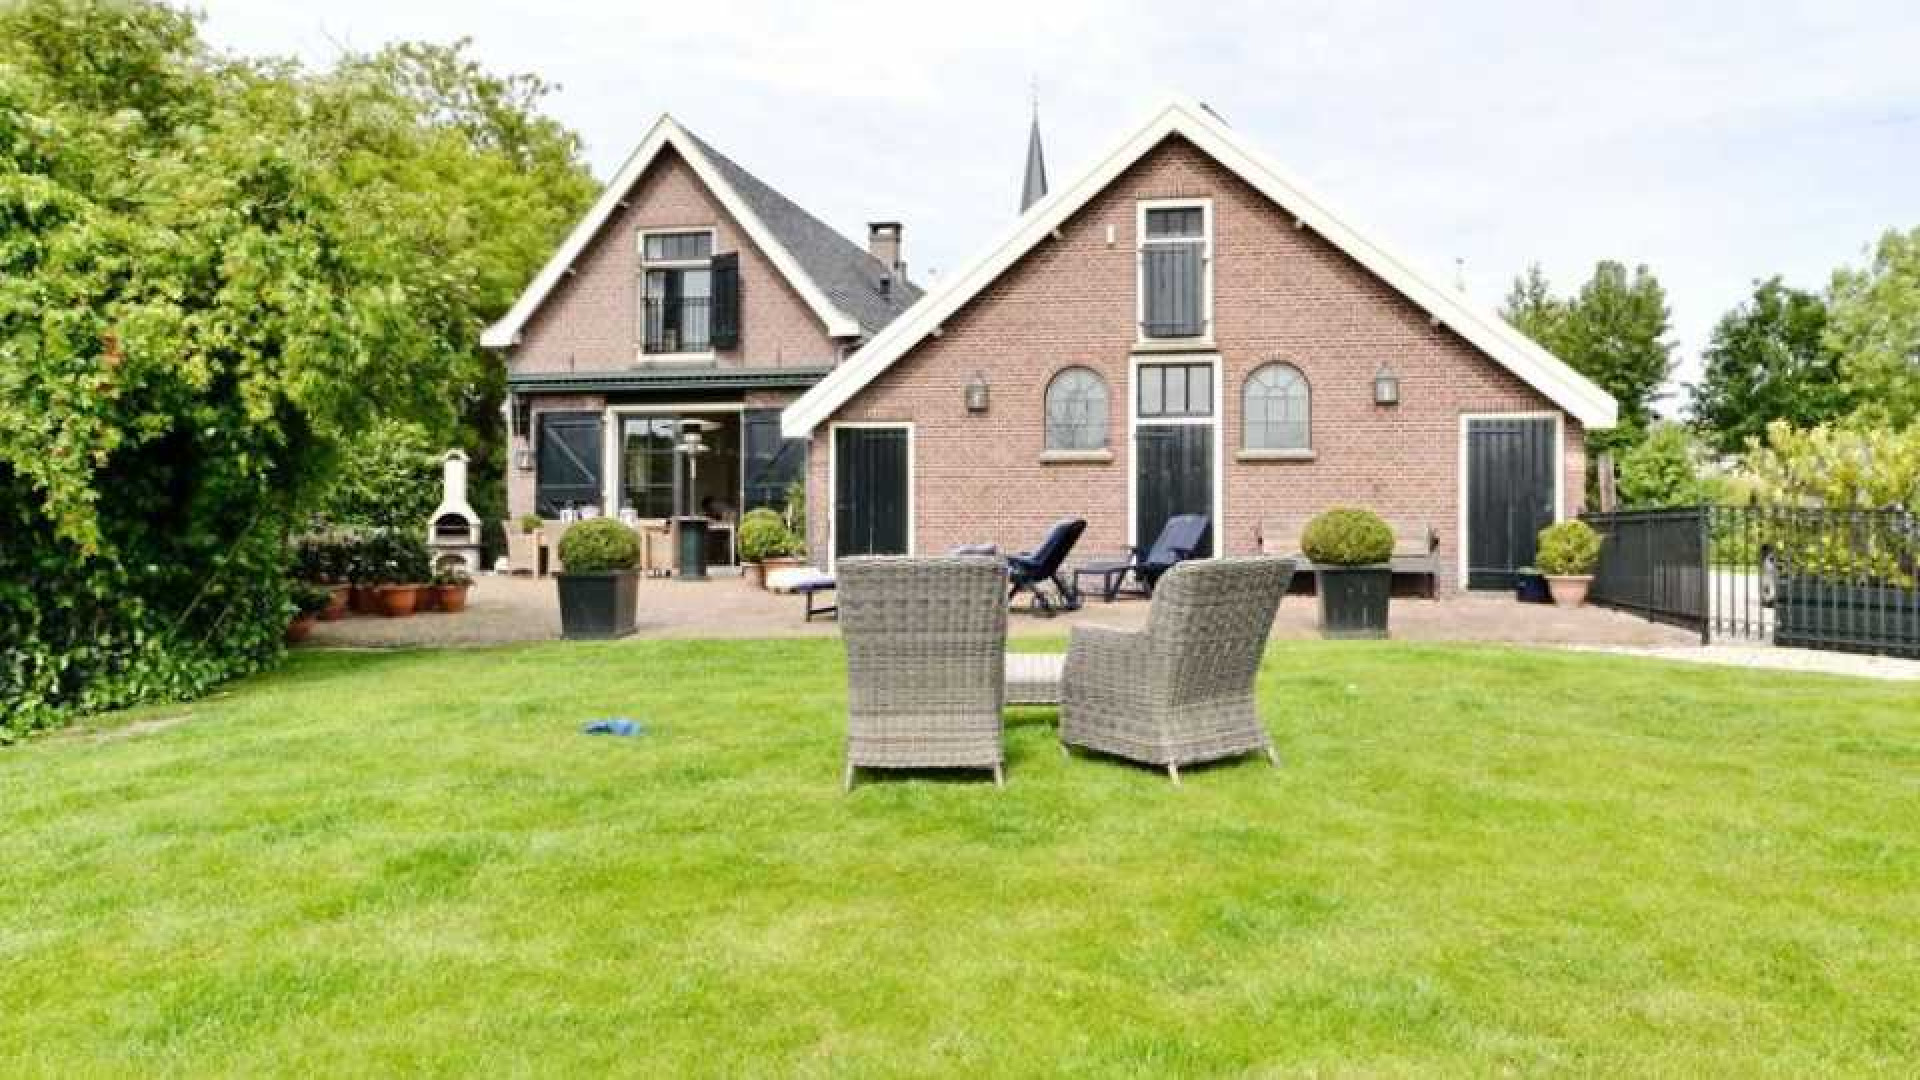 Peter van der Vorst verkoopt zijn huis met bonus. Zie foto's 19